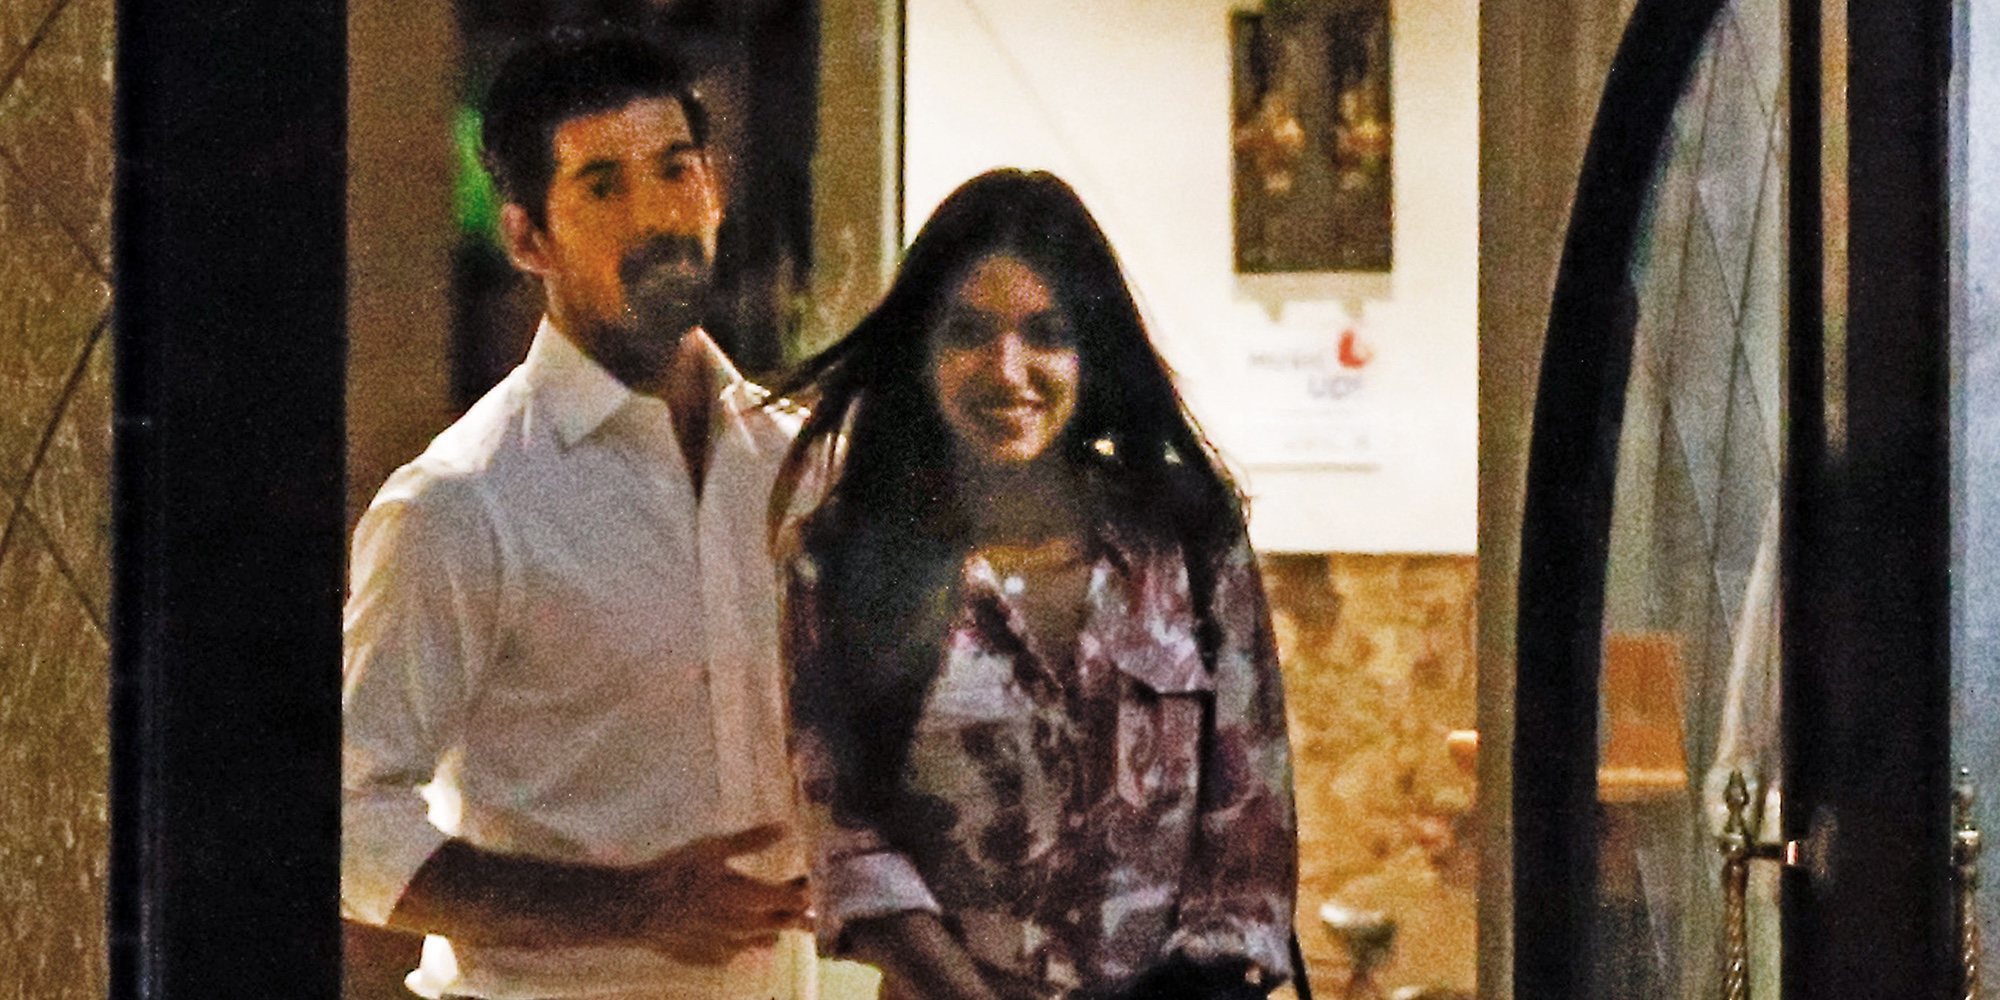 Ana Guerra y Miguel Ángel Muñoz se van de cena romántica confirmando así su relación